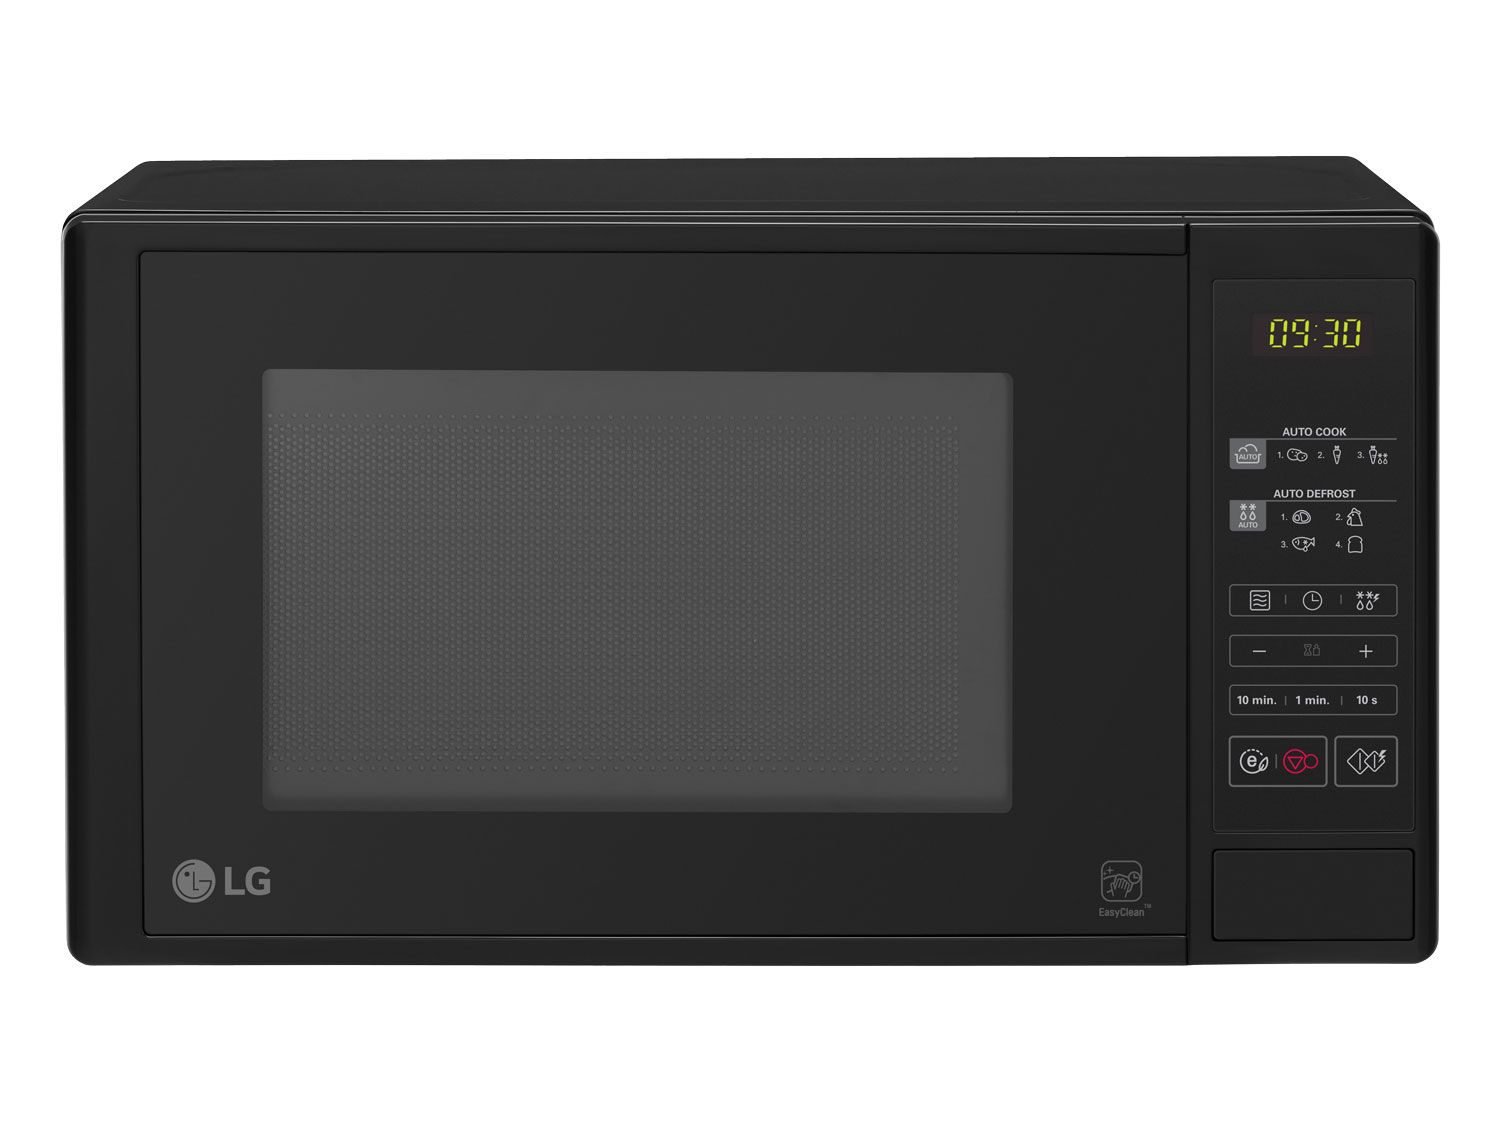 *LG Mikrowelle »MS 2042 D«, 20 L, schwarz*